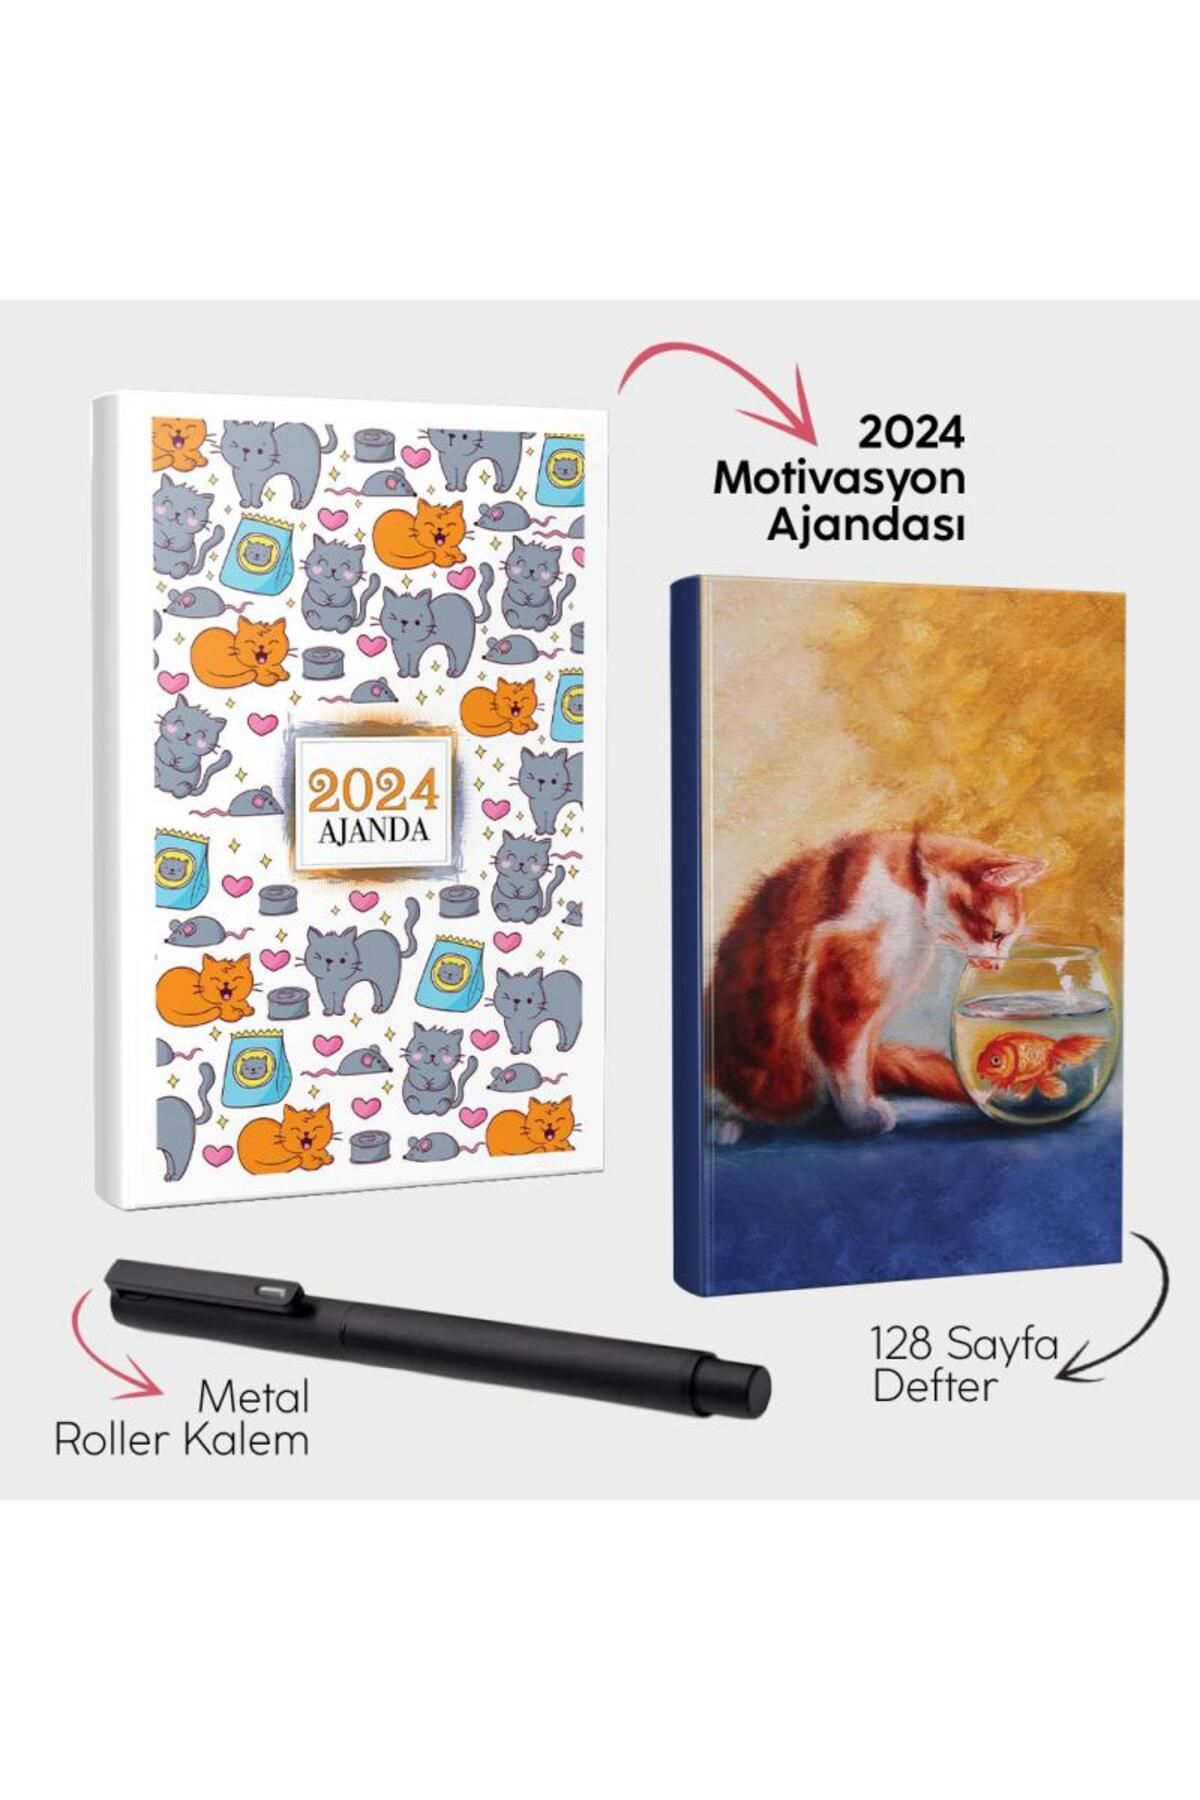 Halk Kitabevi Oyuncu Patiler 2024 Motivasyon Ajandası - Kedi Rüyası Defter ve Metal Roller Kalem